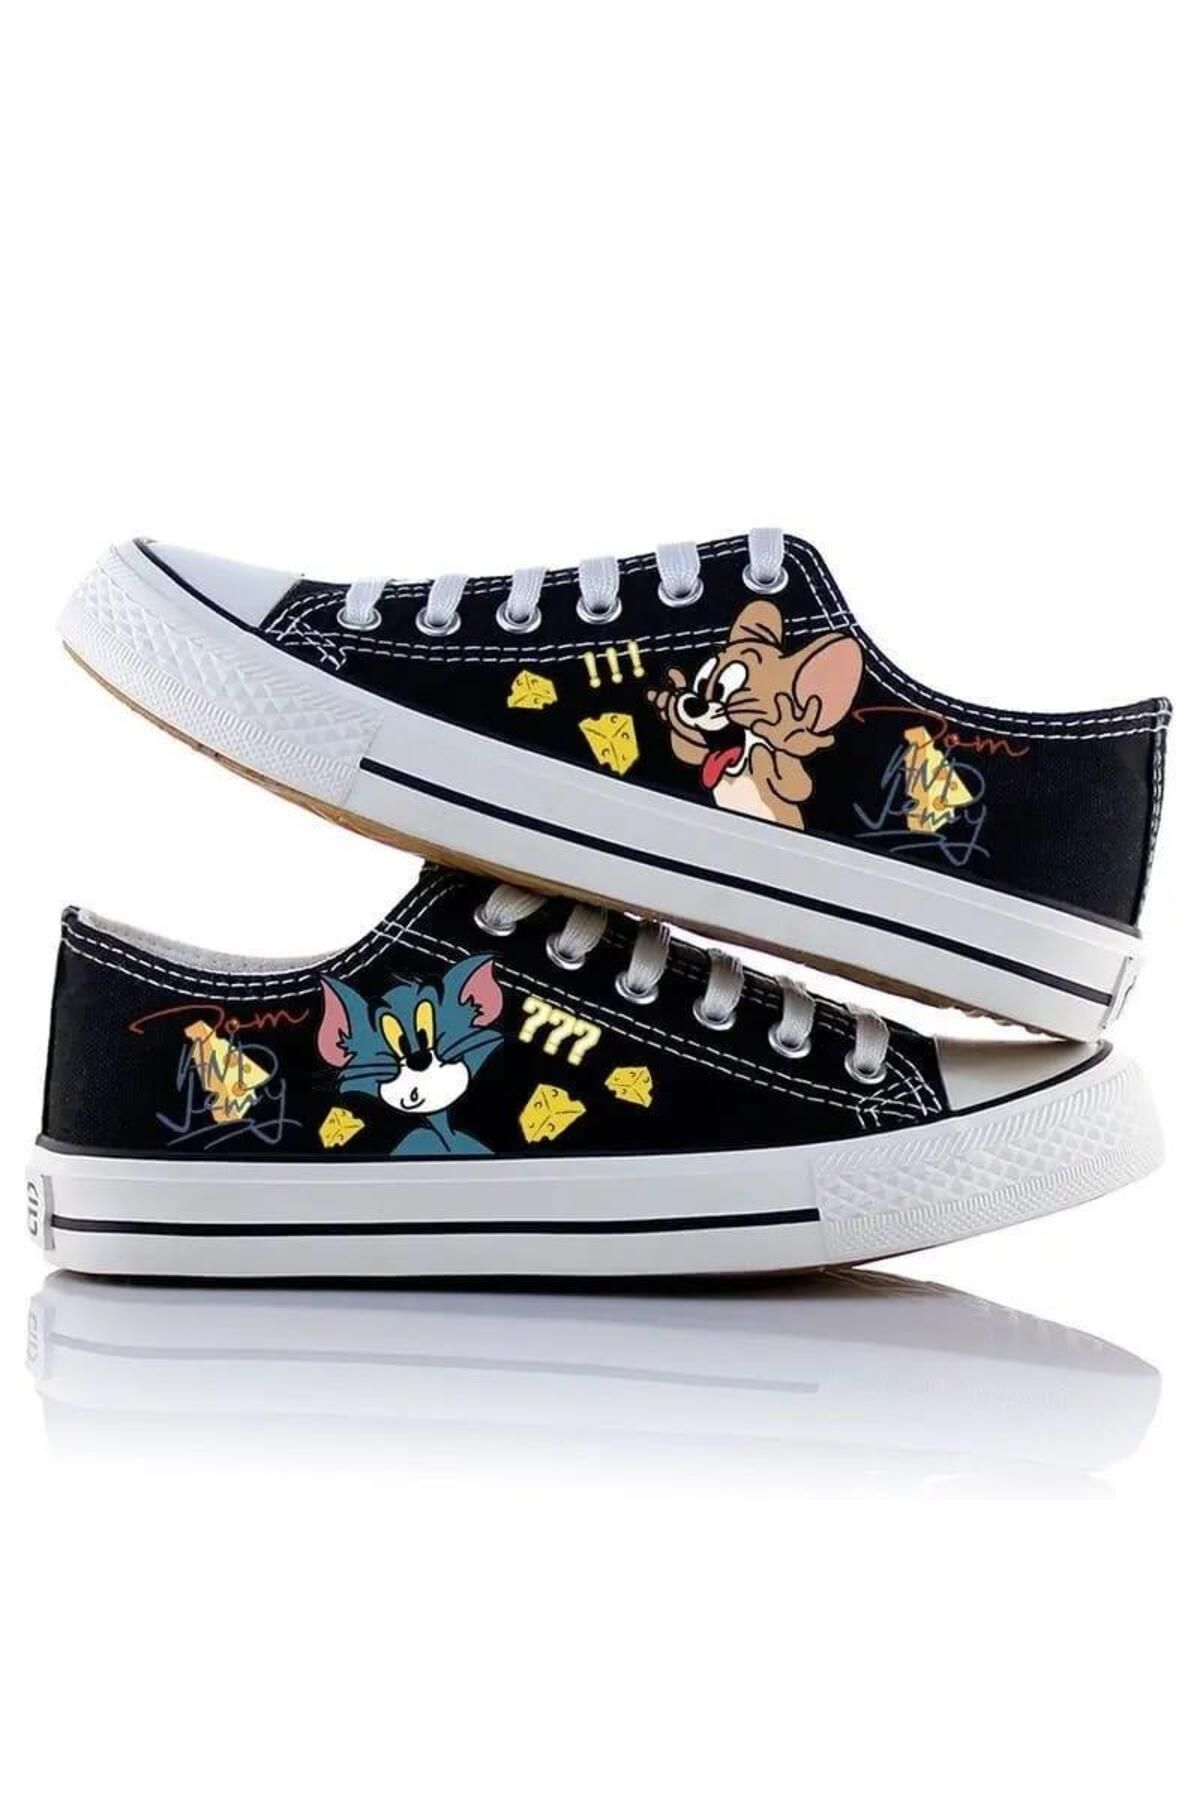 Touz Moda Tom & Jerry Baskılı Unisex Kanvas Ayakkabı